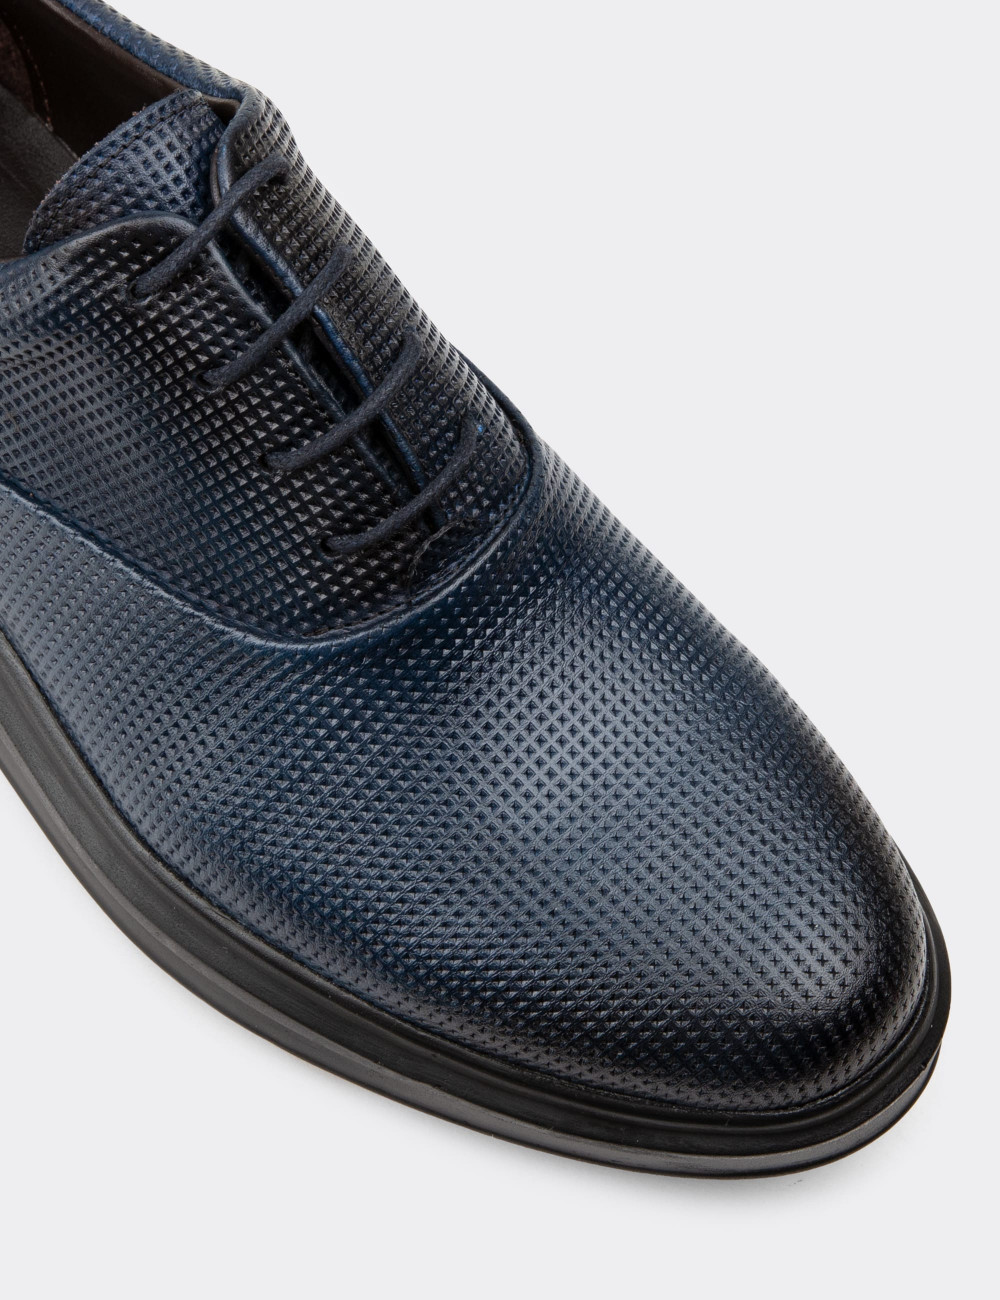 Hakiki Deri Lacivert Comfort Günlük Erkek Ayakkabı - 01652MLCVP10